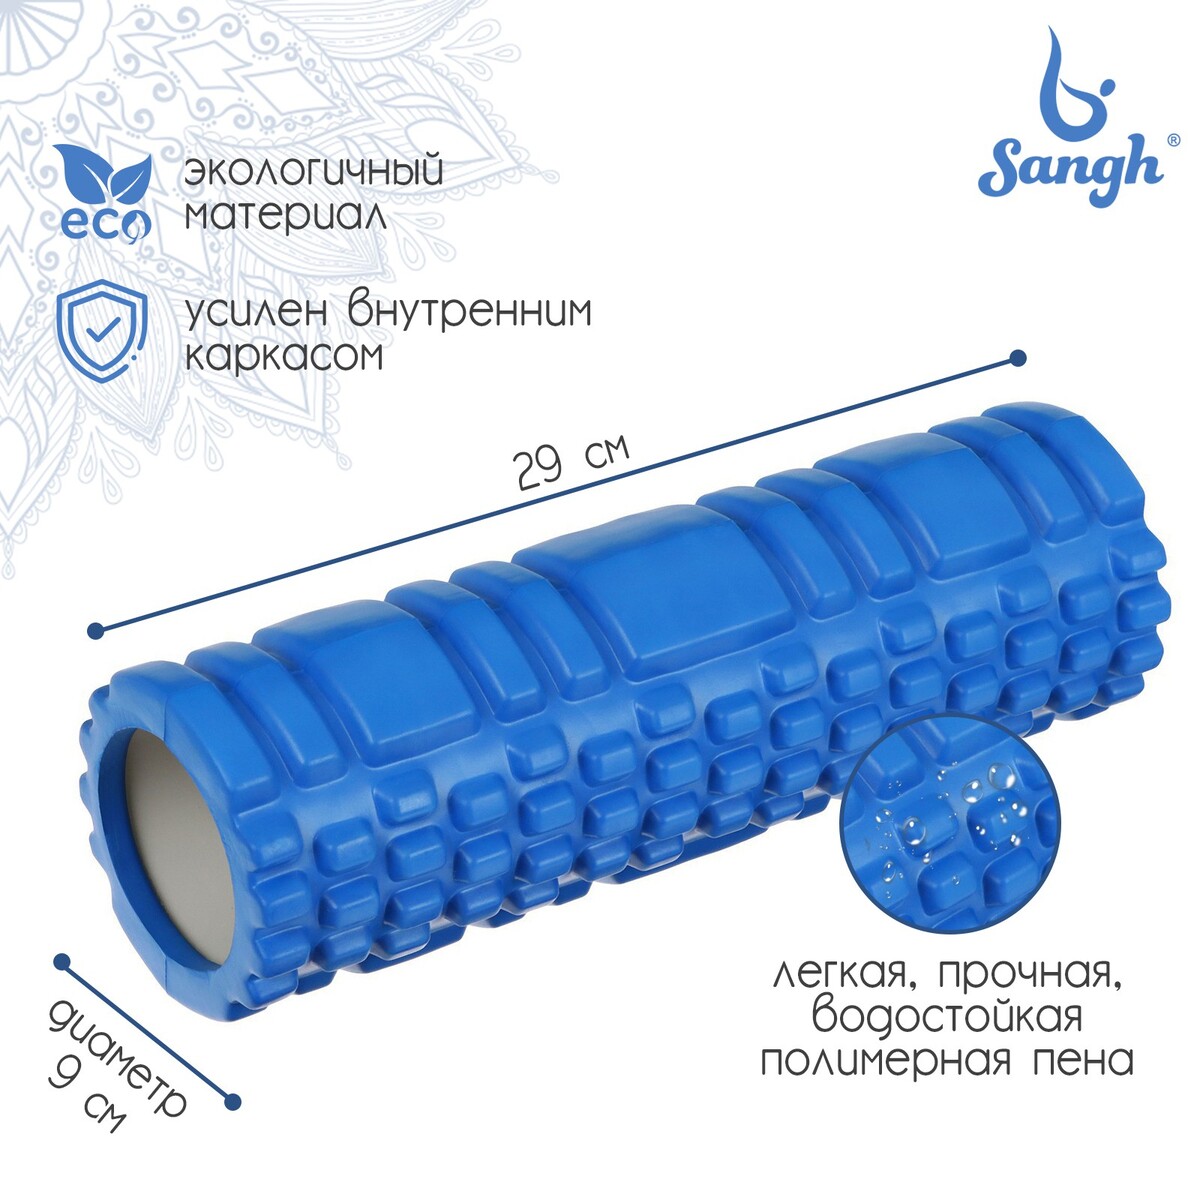 Ролик массажный sangh, 29х9 см, цвет синий ролик для йоги sportex 60x15cm эпп литой d34362